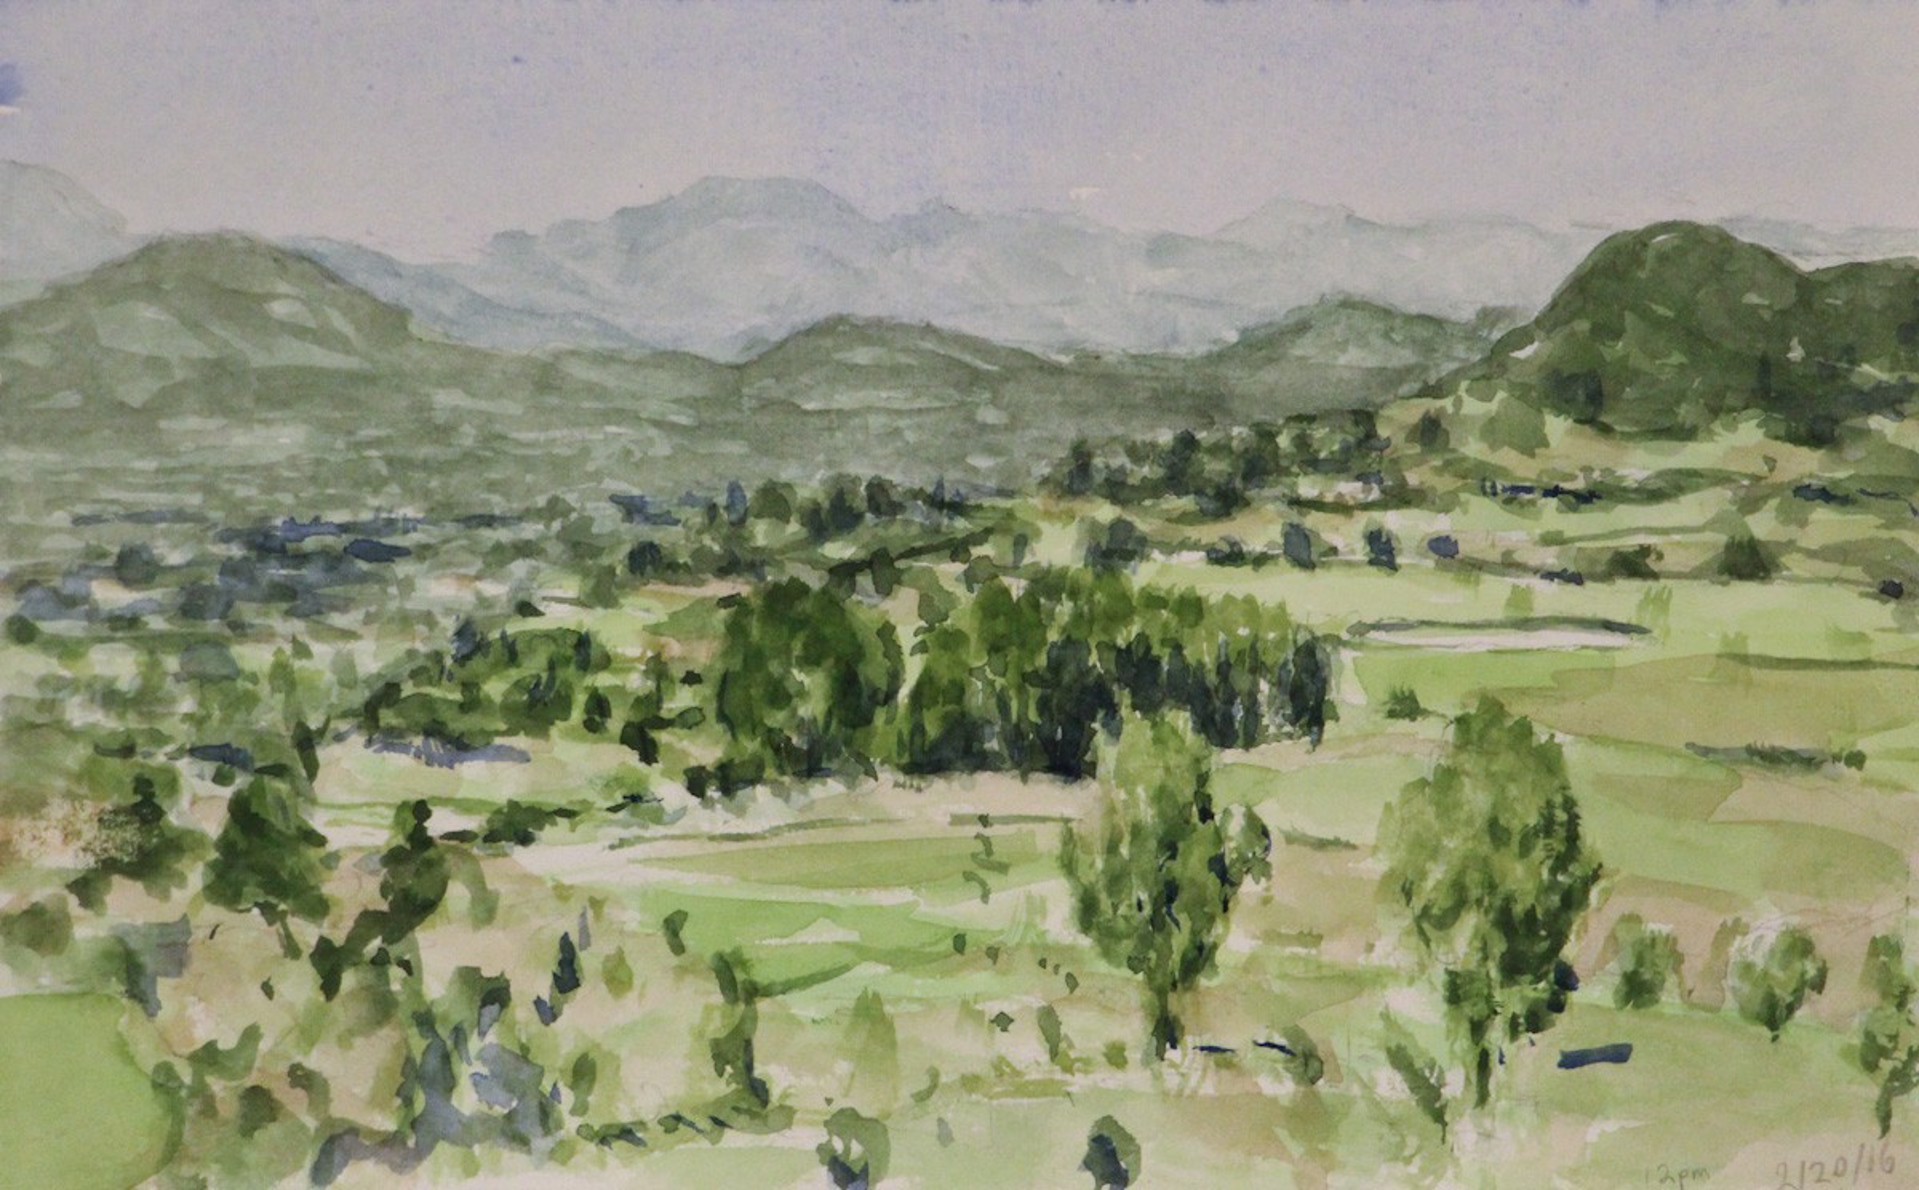 Sketch for Napa Valley by Ryan Reynolds